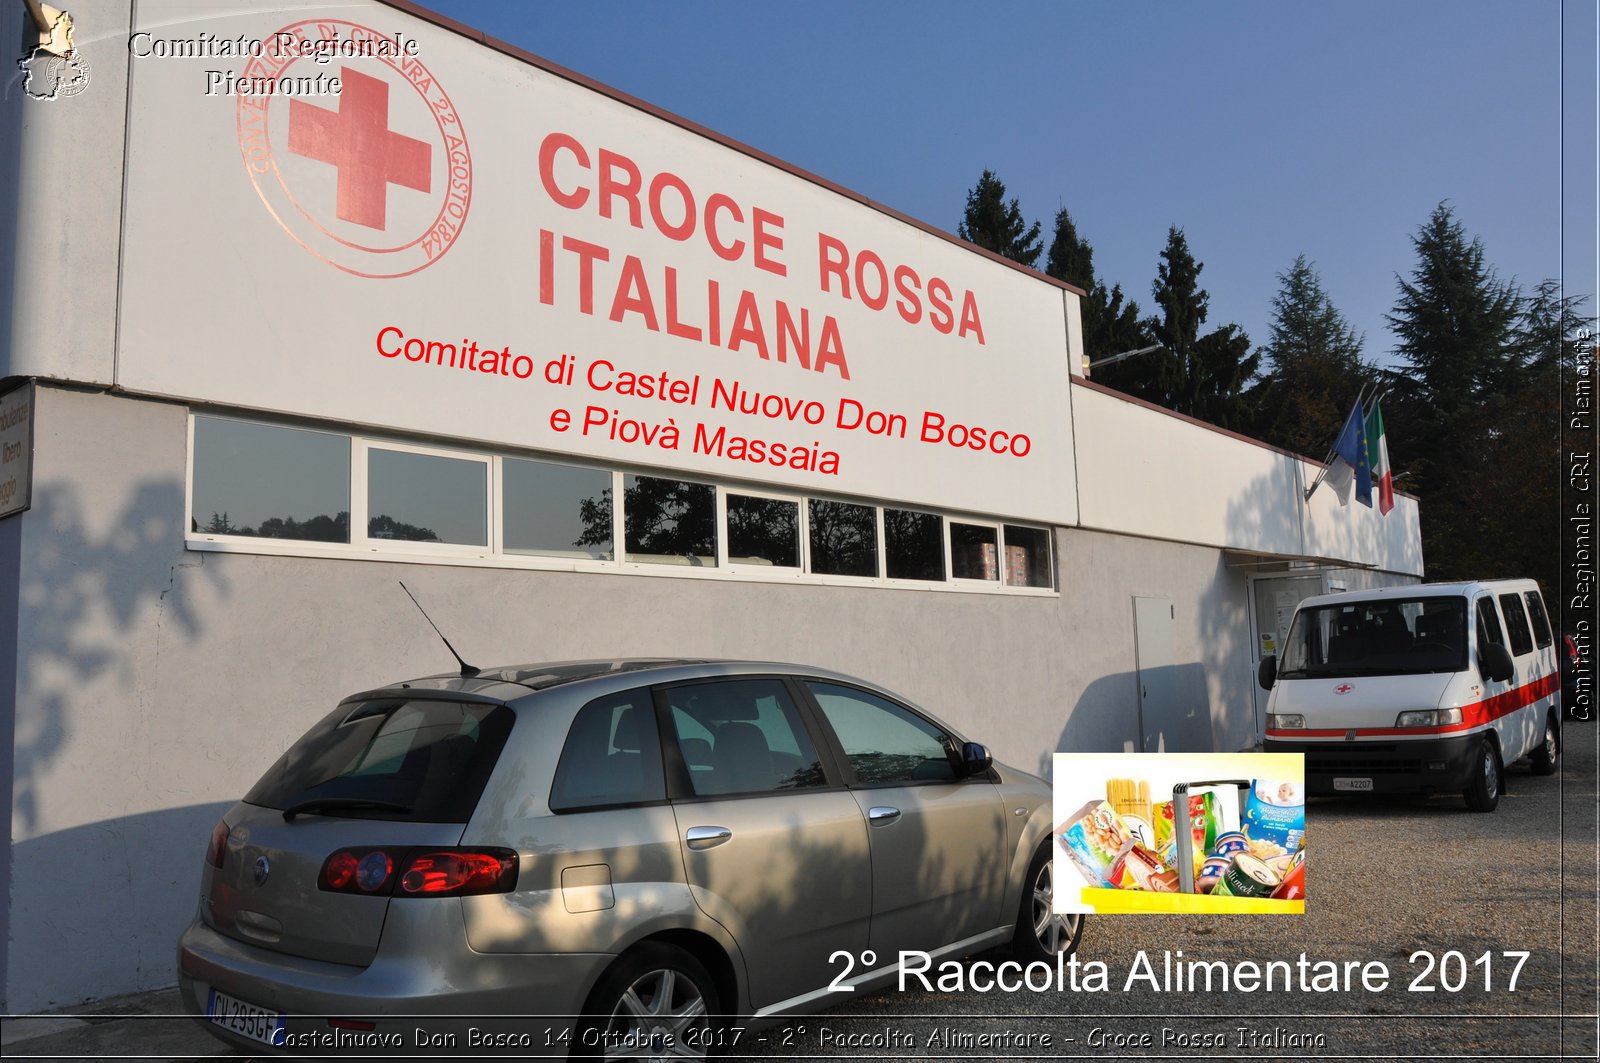 Castelnuovo Don Bosco 14 Ottobre 2017 - 2 Raccolta Alimentare - Croce Rossa Italiana- Comitato Regionale del Piemonte